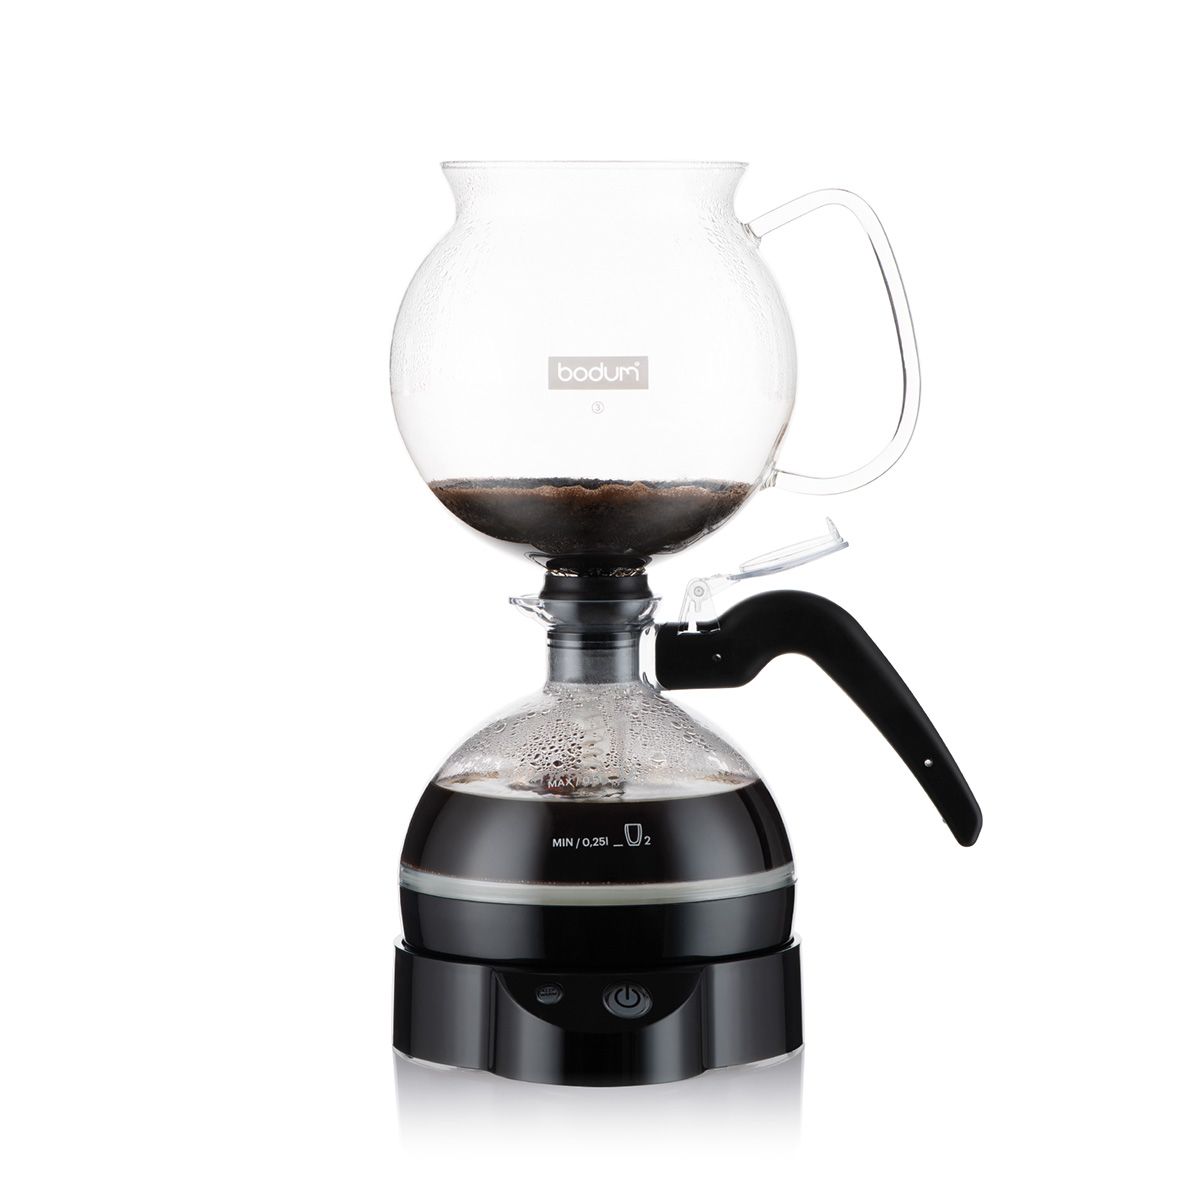 https://www.inwohn.com/cdn/shop/products/Bodum-Epebo-Elektrischer-Vakuum-Kaffeebereiter-Schwarz-4-Tassen-Coffee-Makers-Espresso-Machines-Bodum-11822-01EURO-320-BOD-699965412791-inwohn-2.jpg?v=1661451451&width=1200